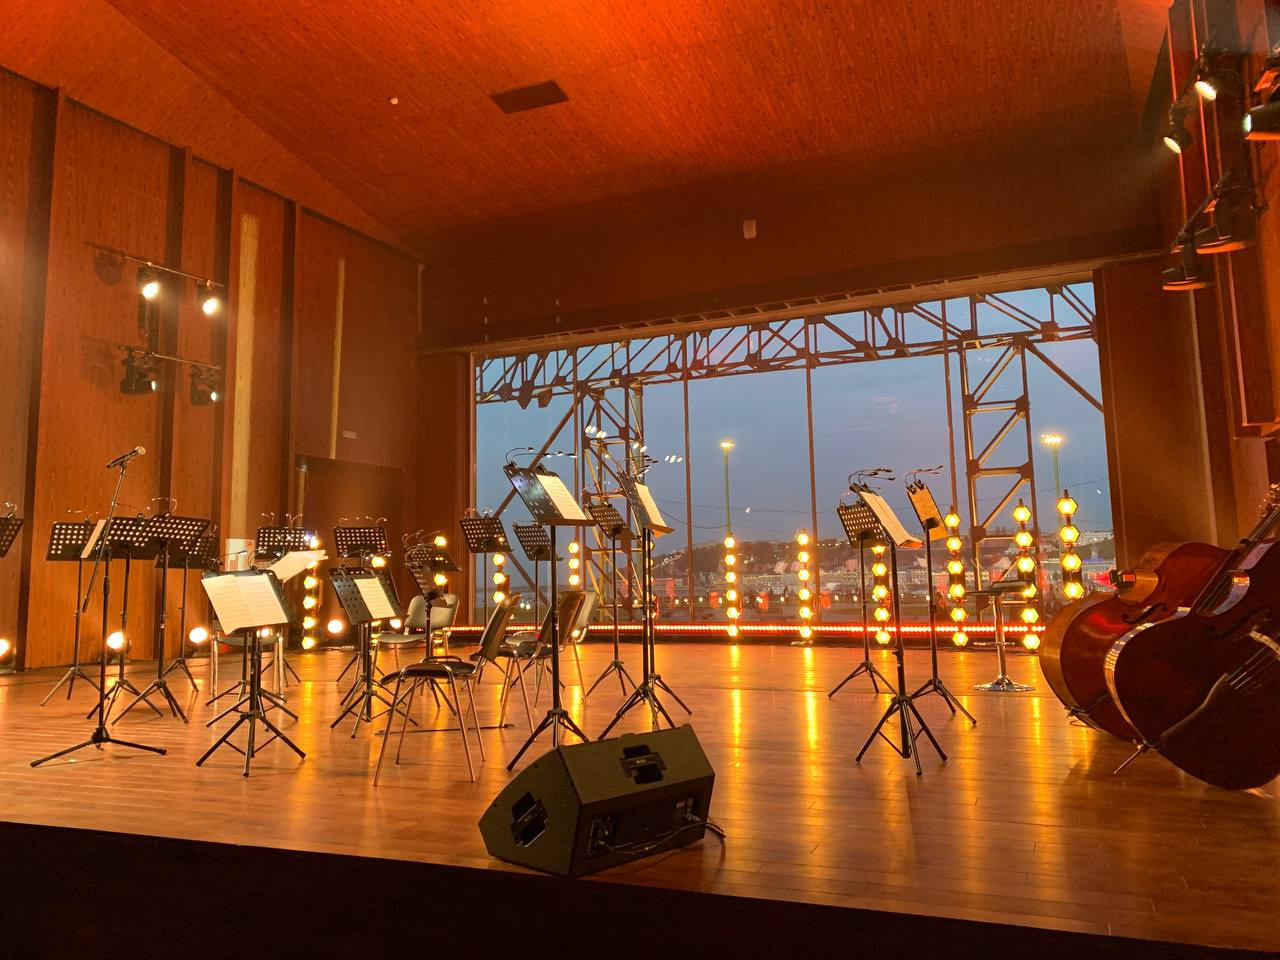 Конструкция зала позволила музыкантам играть без усиливающей звук аппаратуры